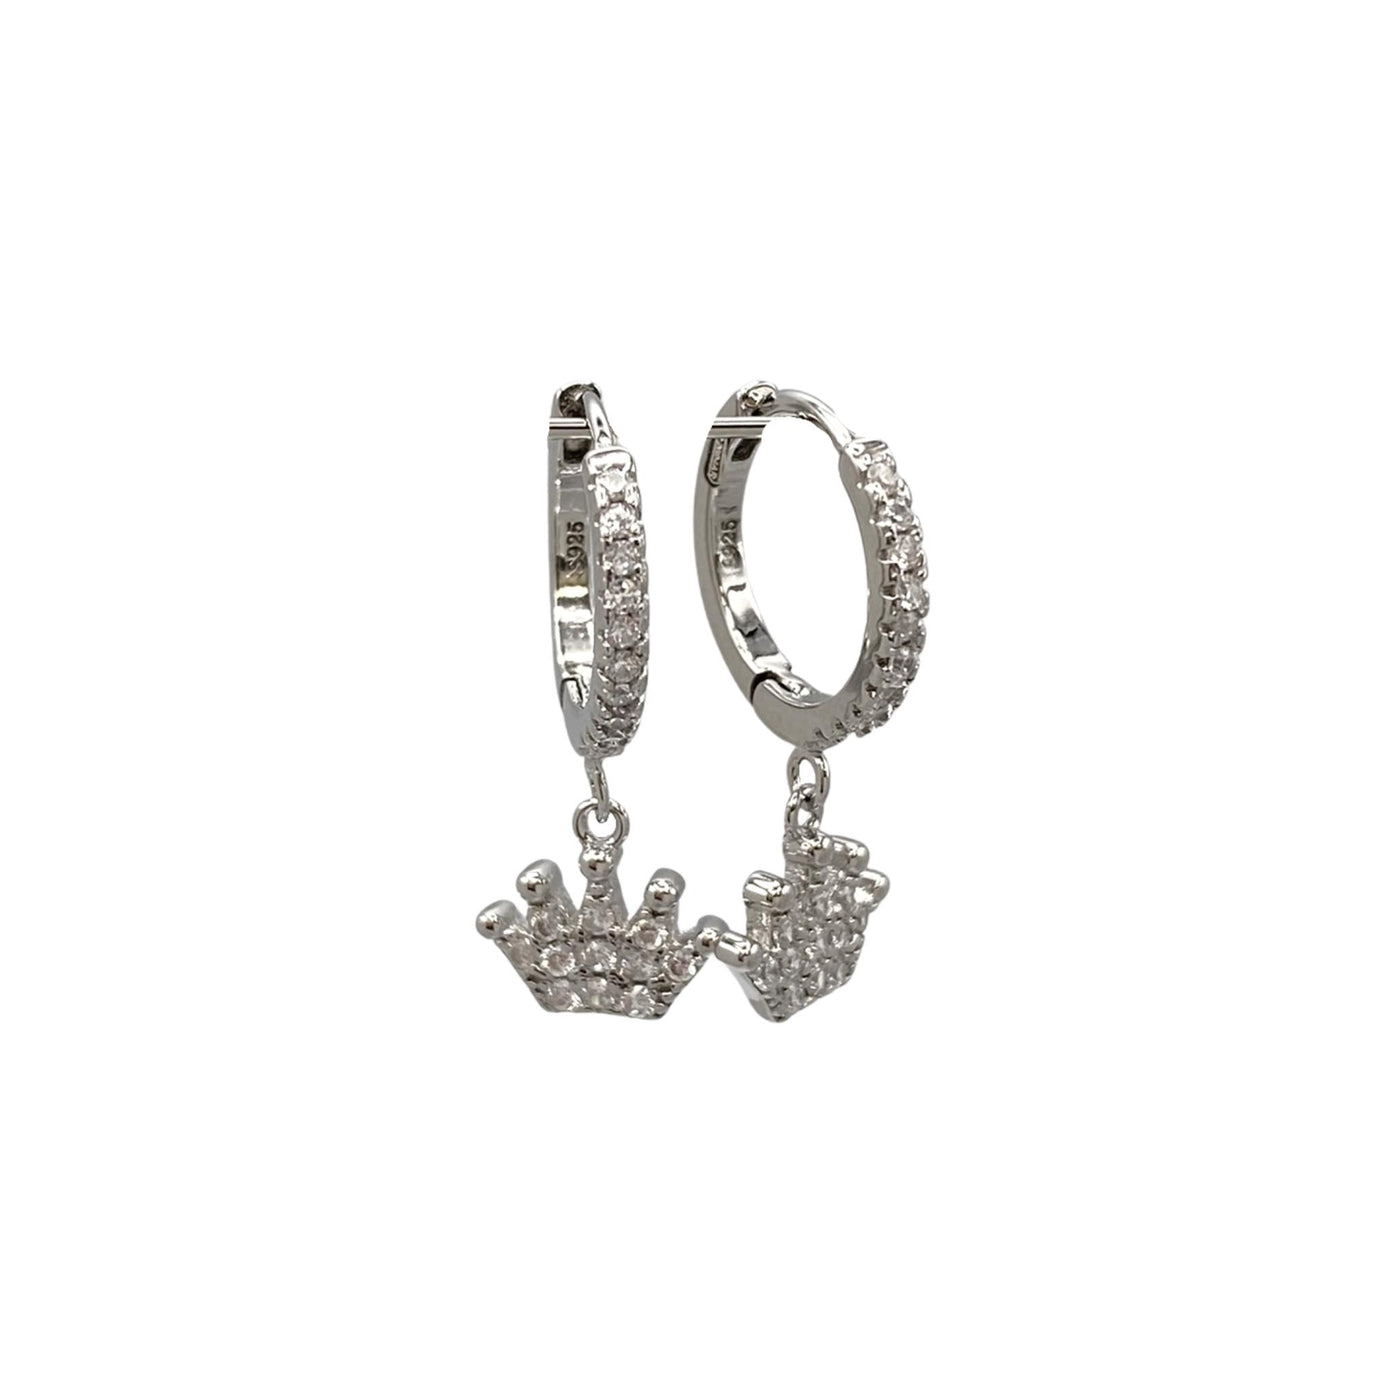 Silver hoop earrings with crown charms